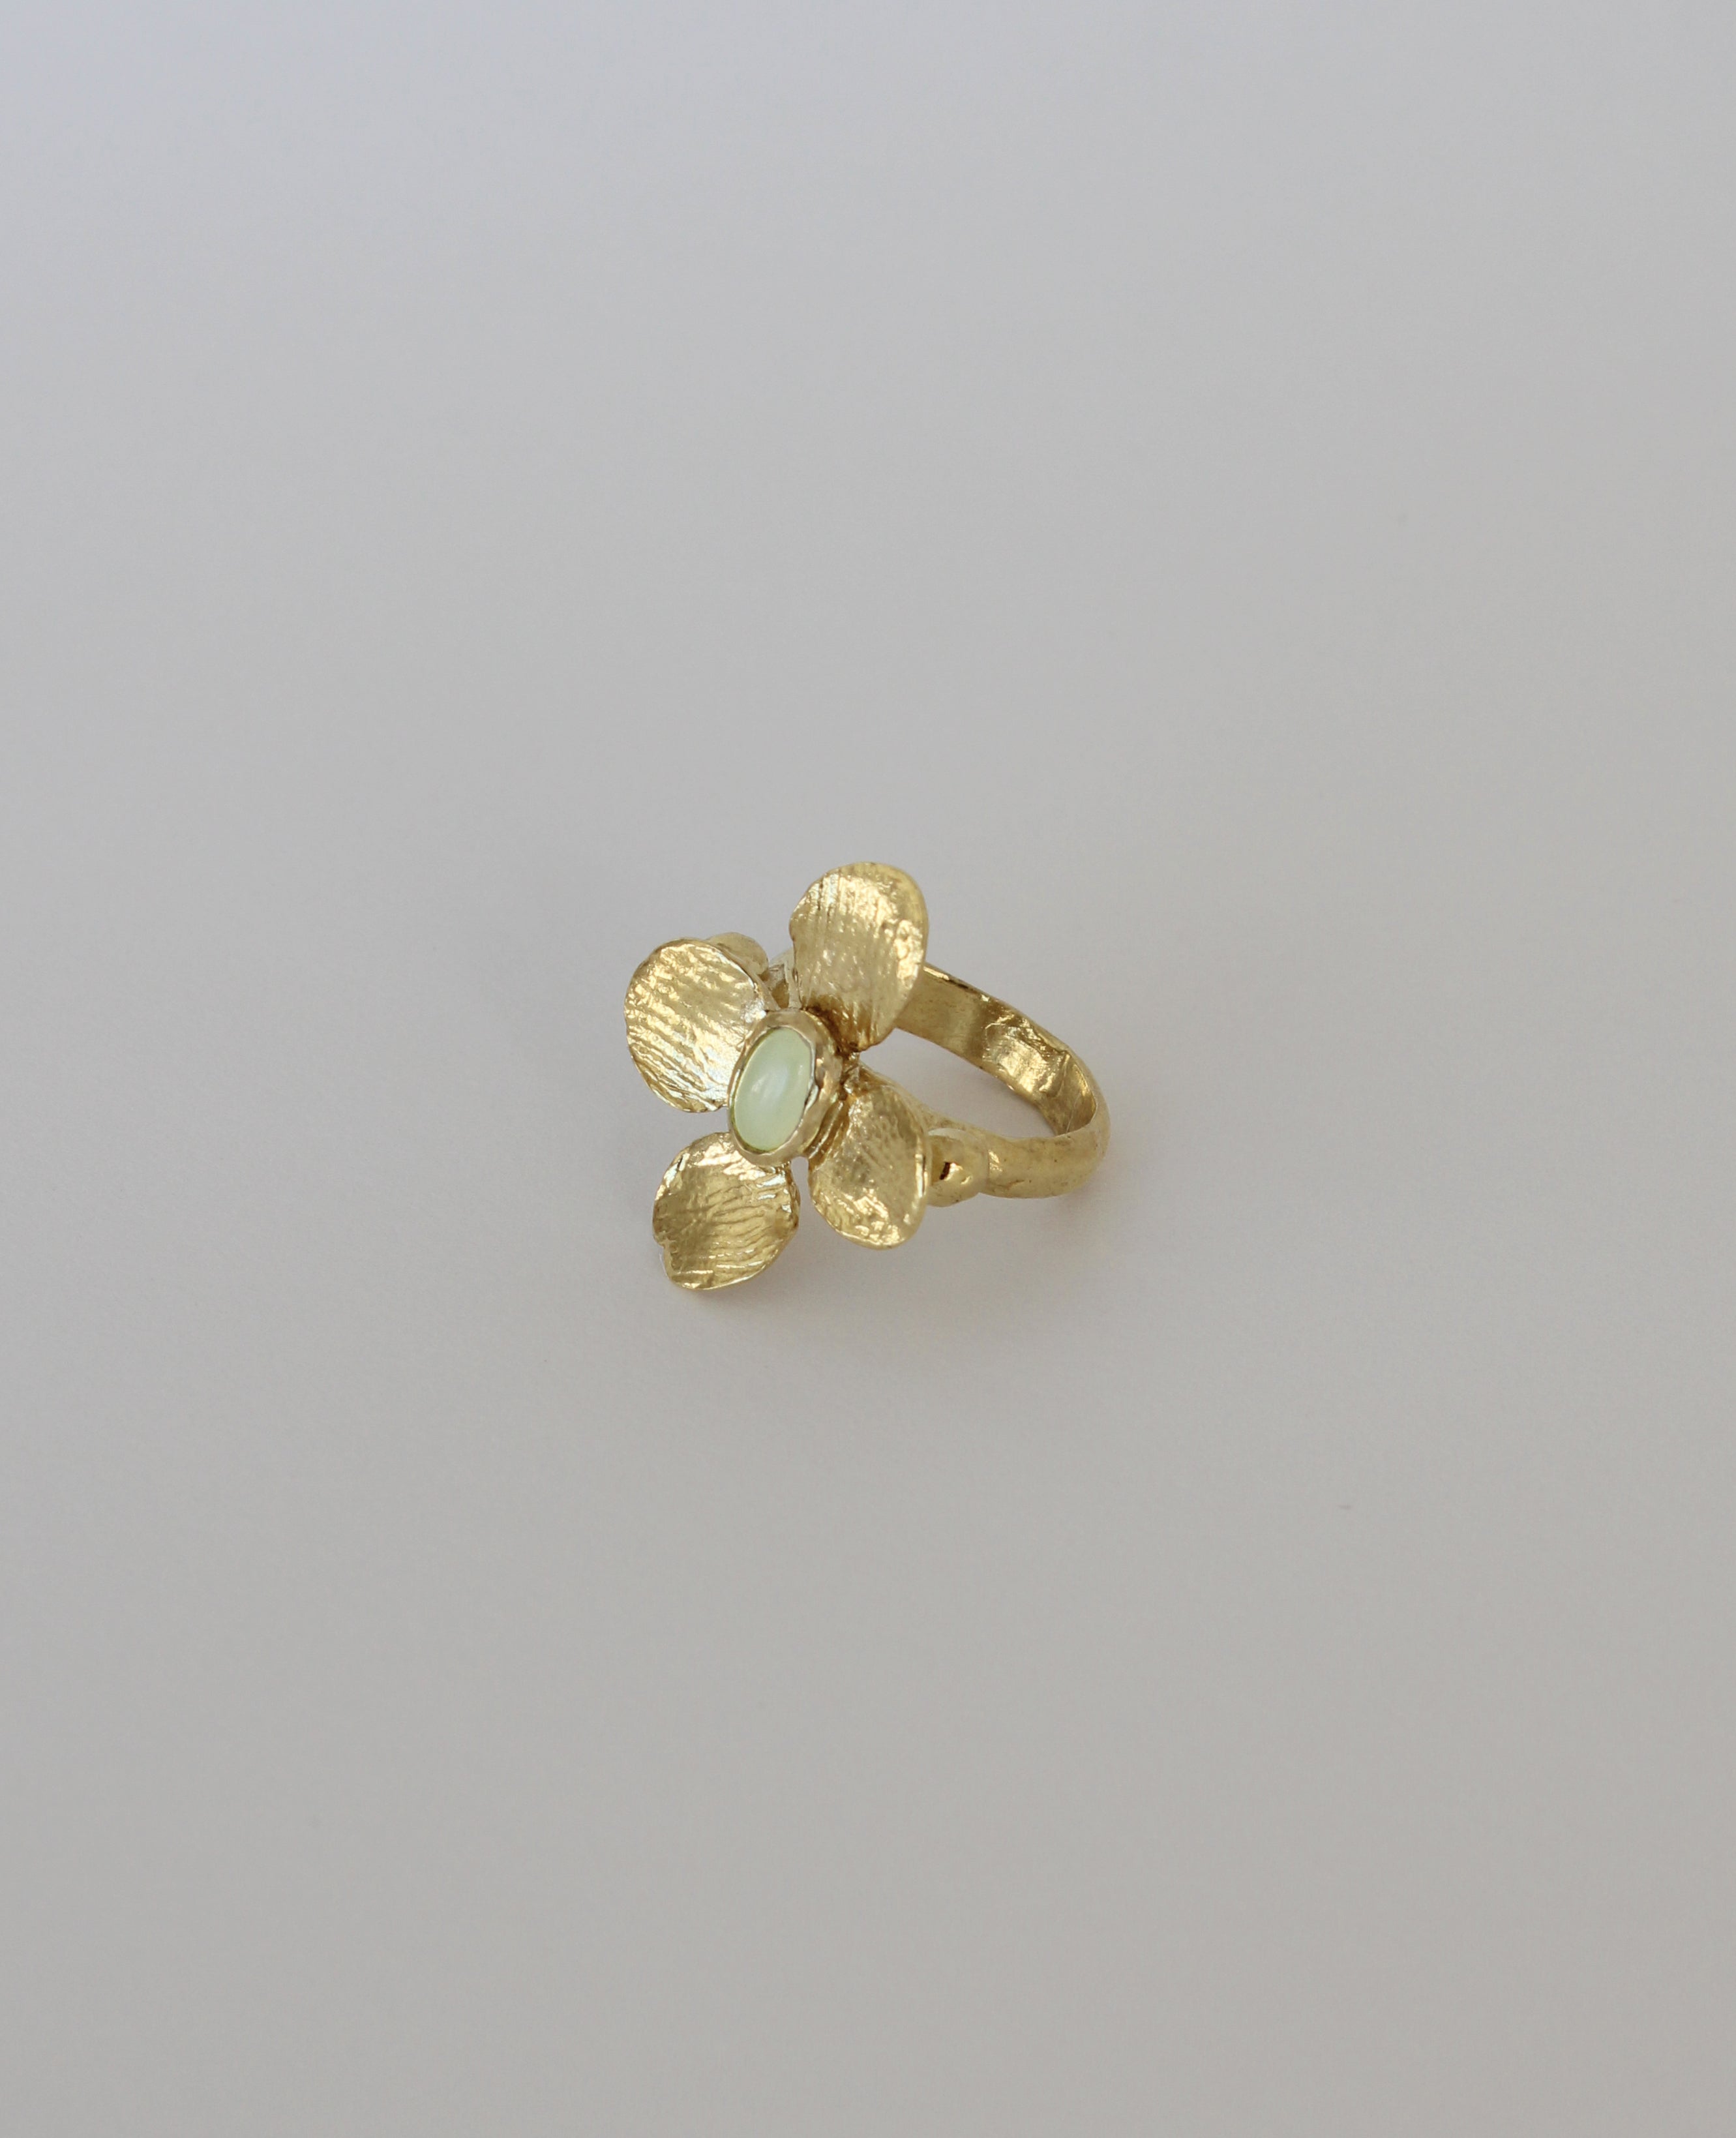 CARDAMINE // bague en or - ORA-C jewelry - bijoux faits à la main par Caroline Pham, designer indépendante basée à Montréal